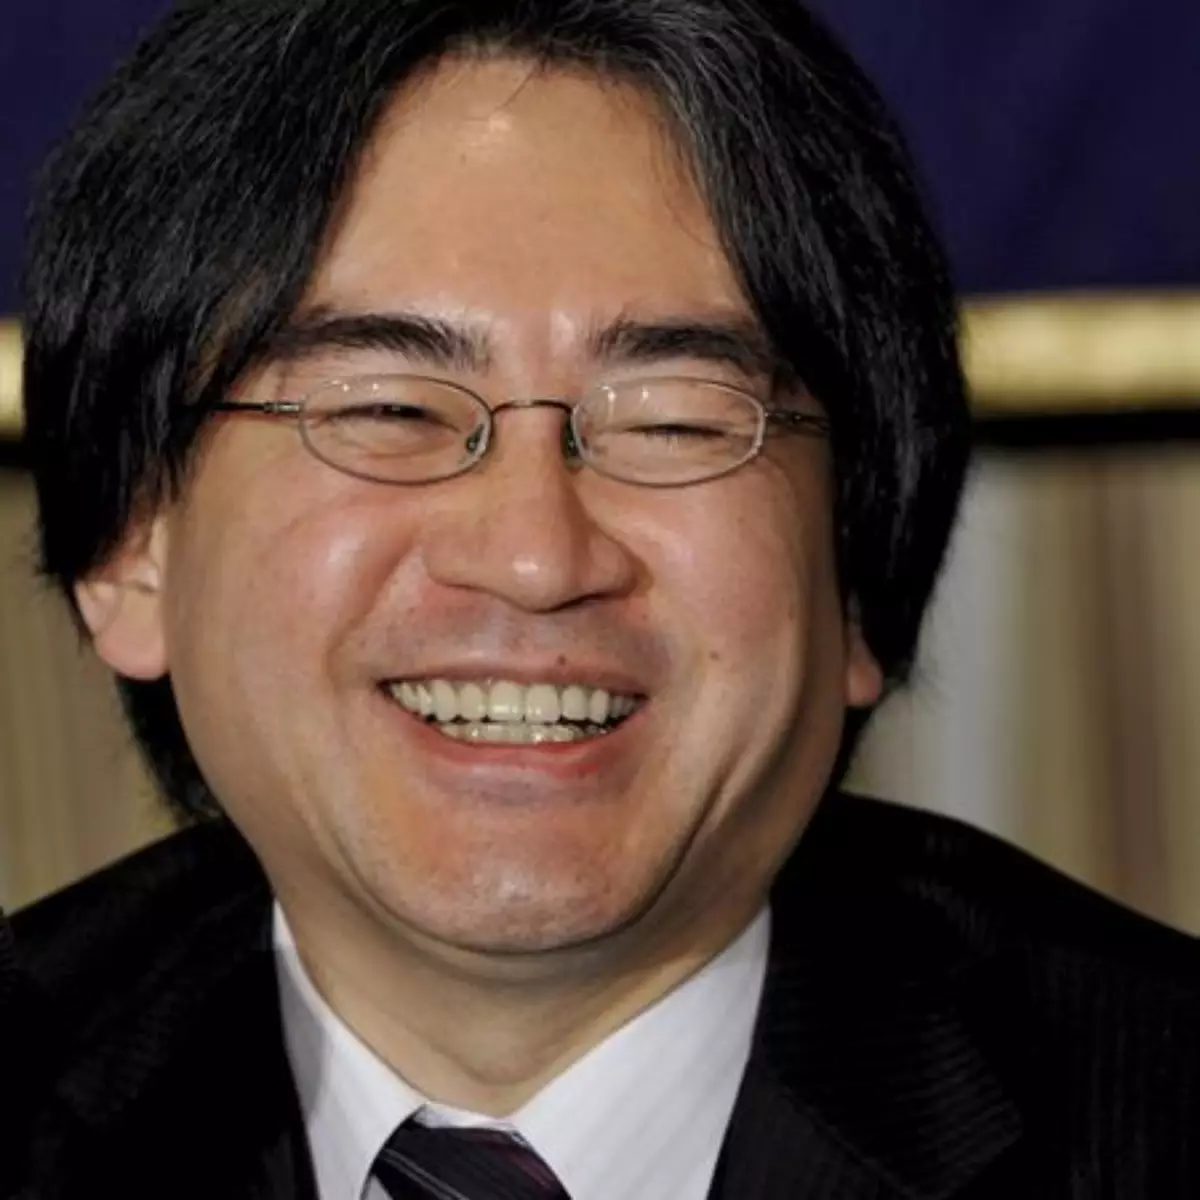 Imagem do ex-presidente da Nintendo, Satoru Iwata, falecido em 2015